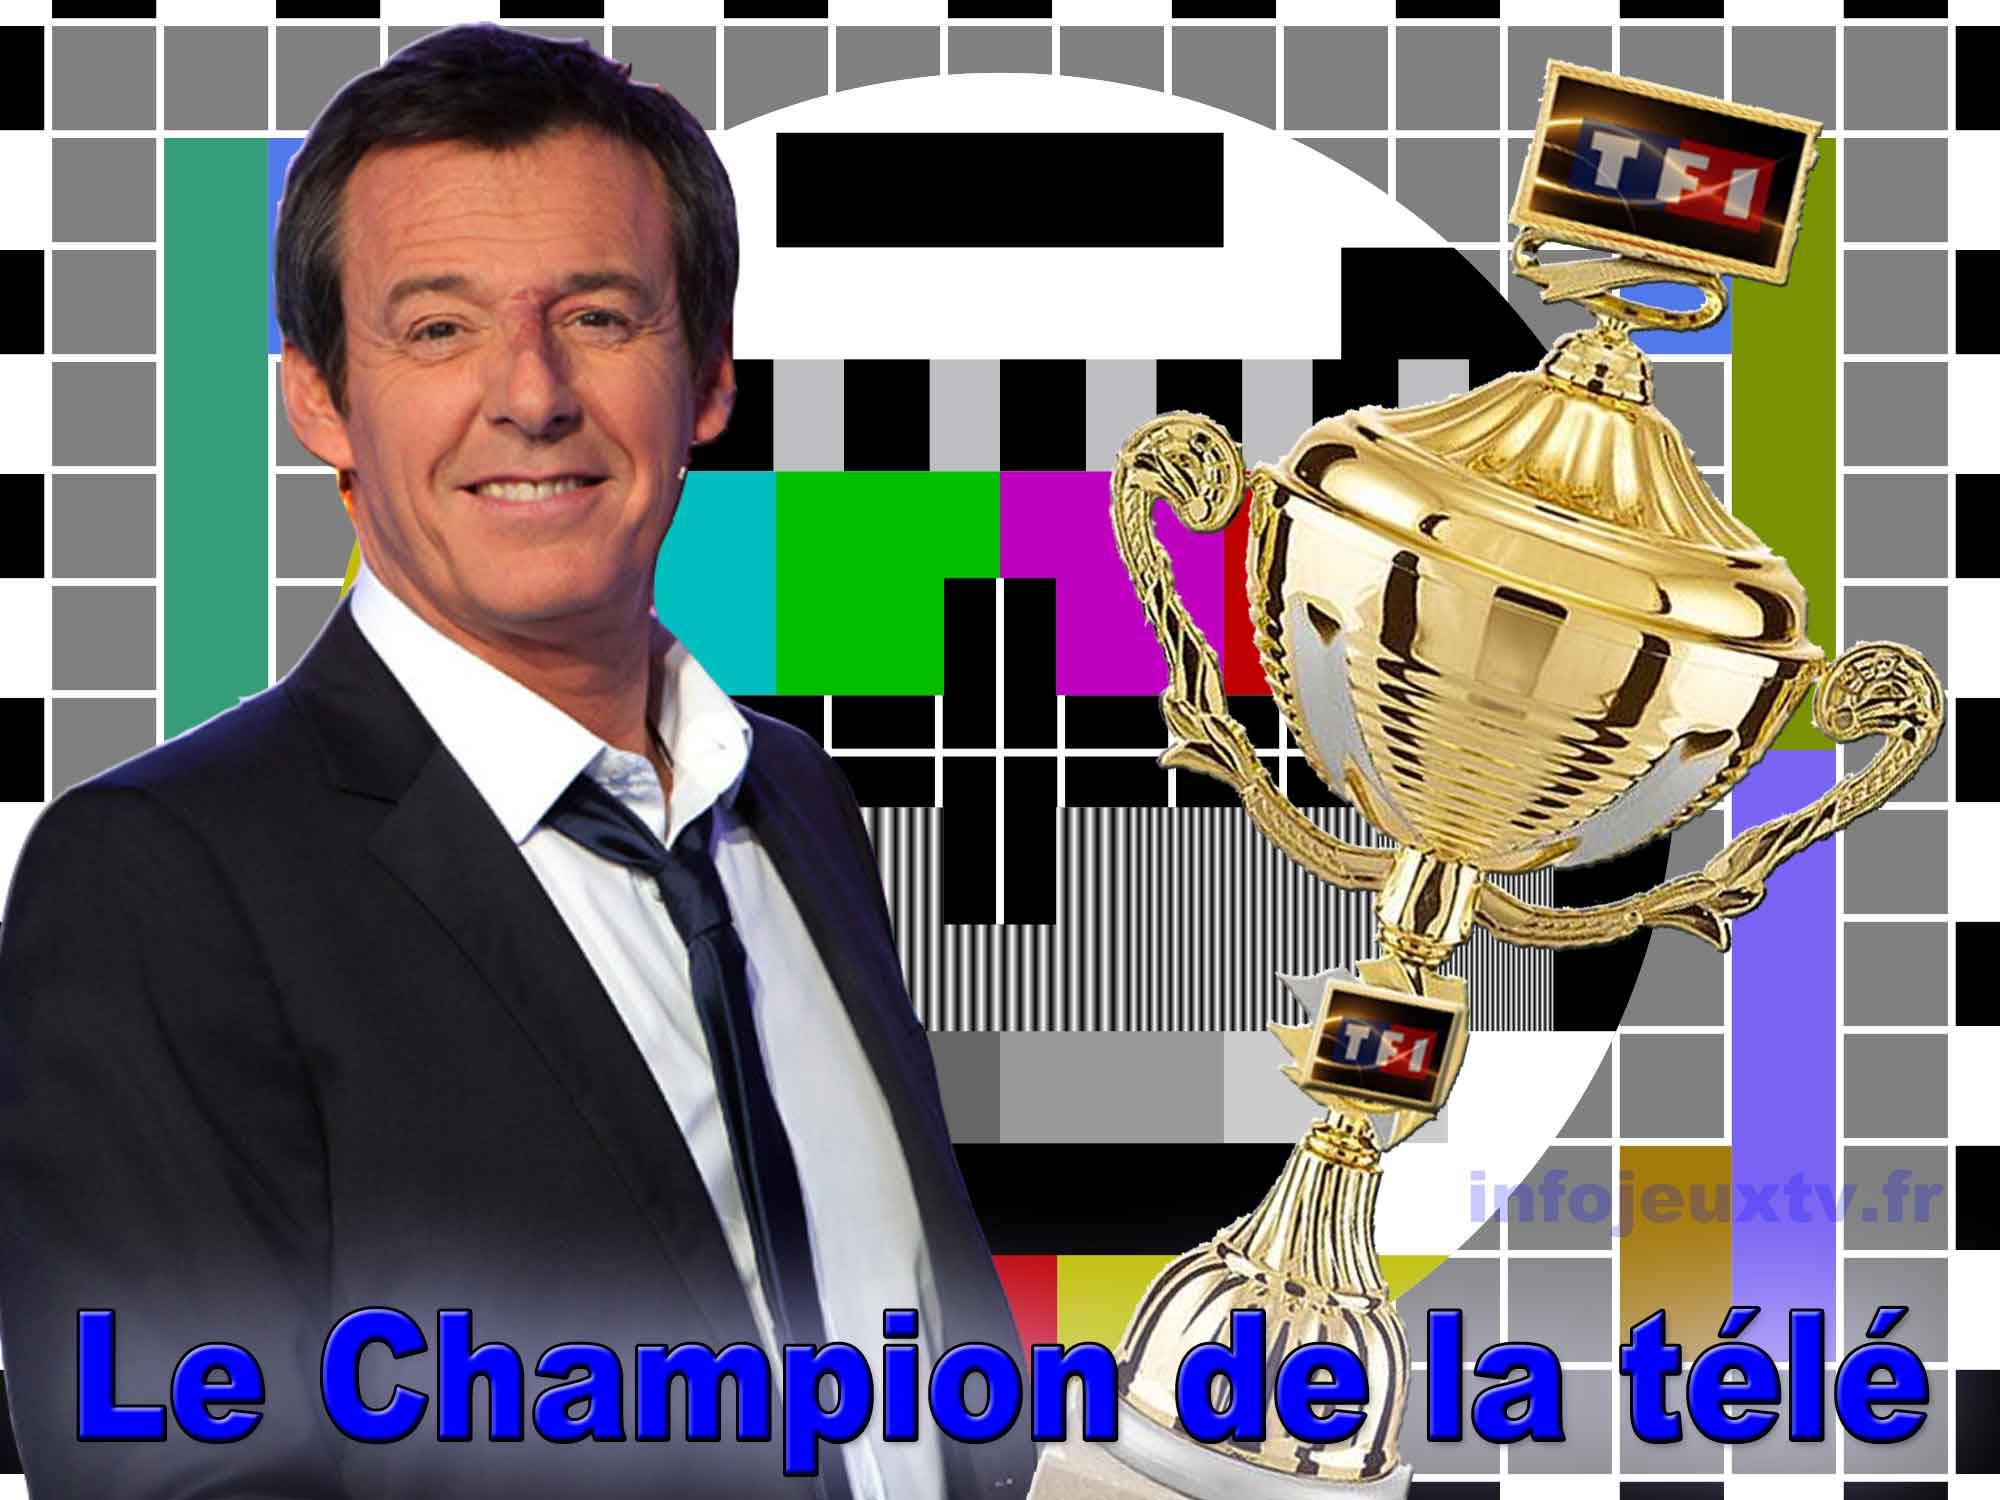 Le Champion de la télé